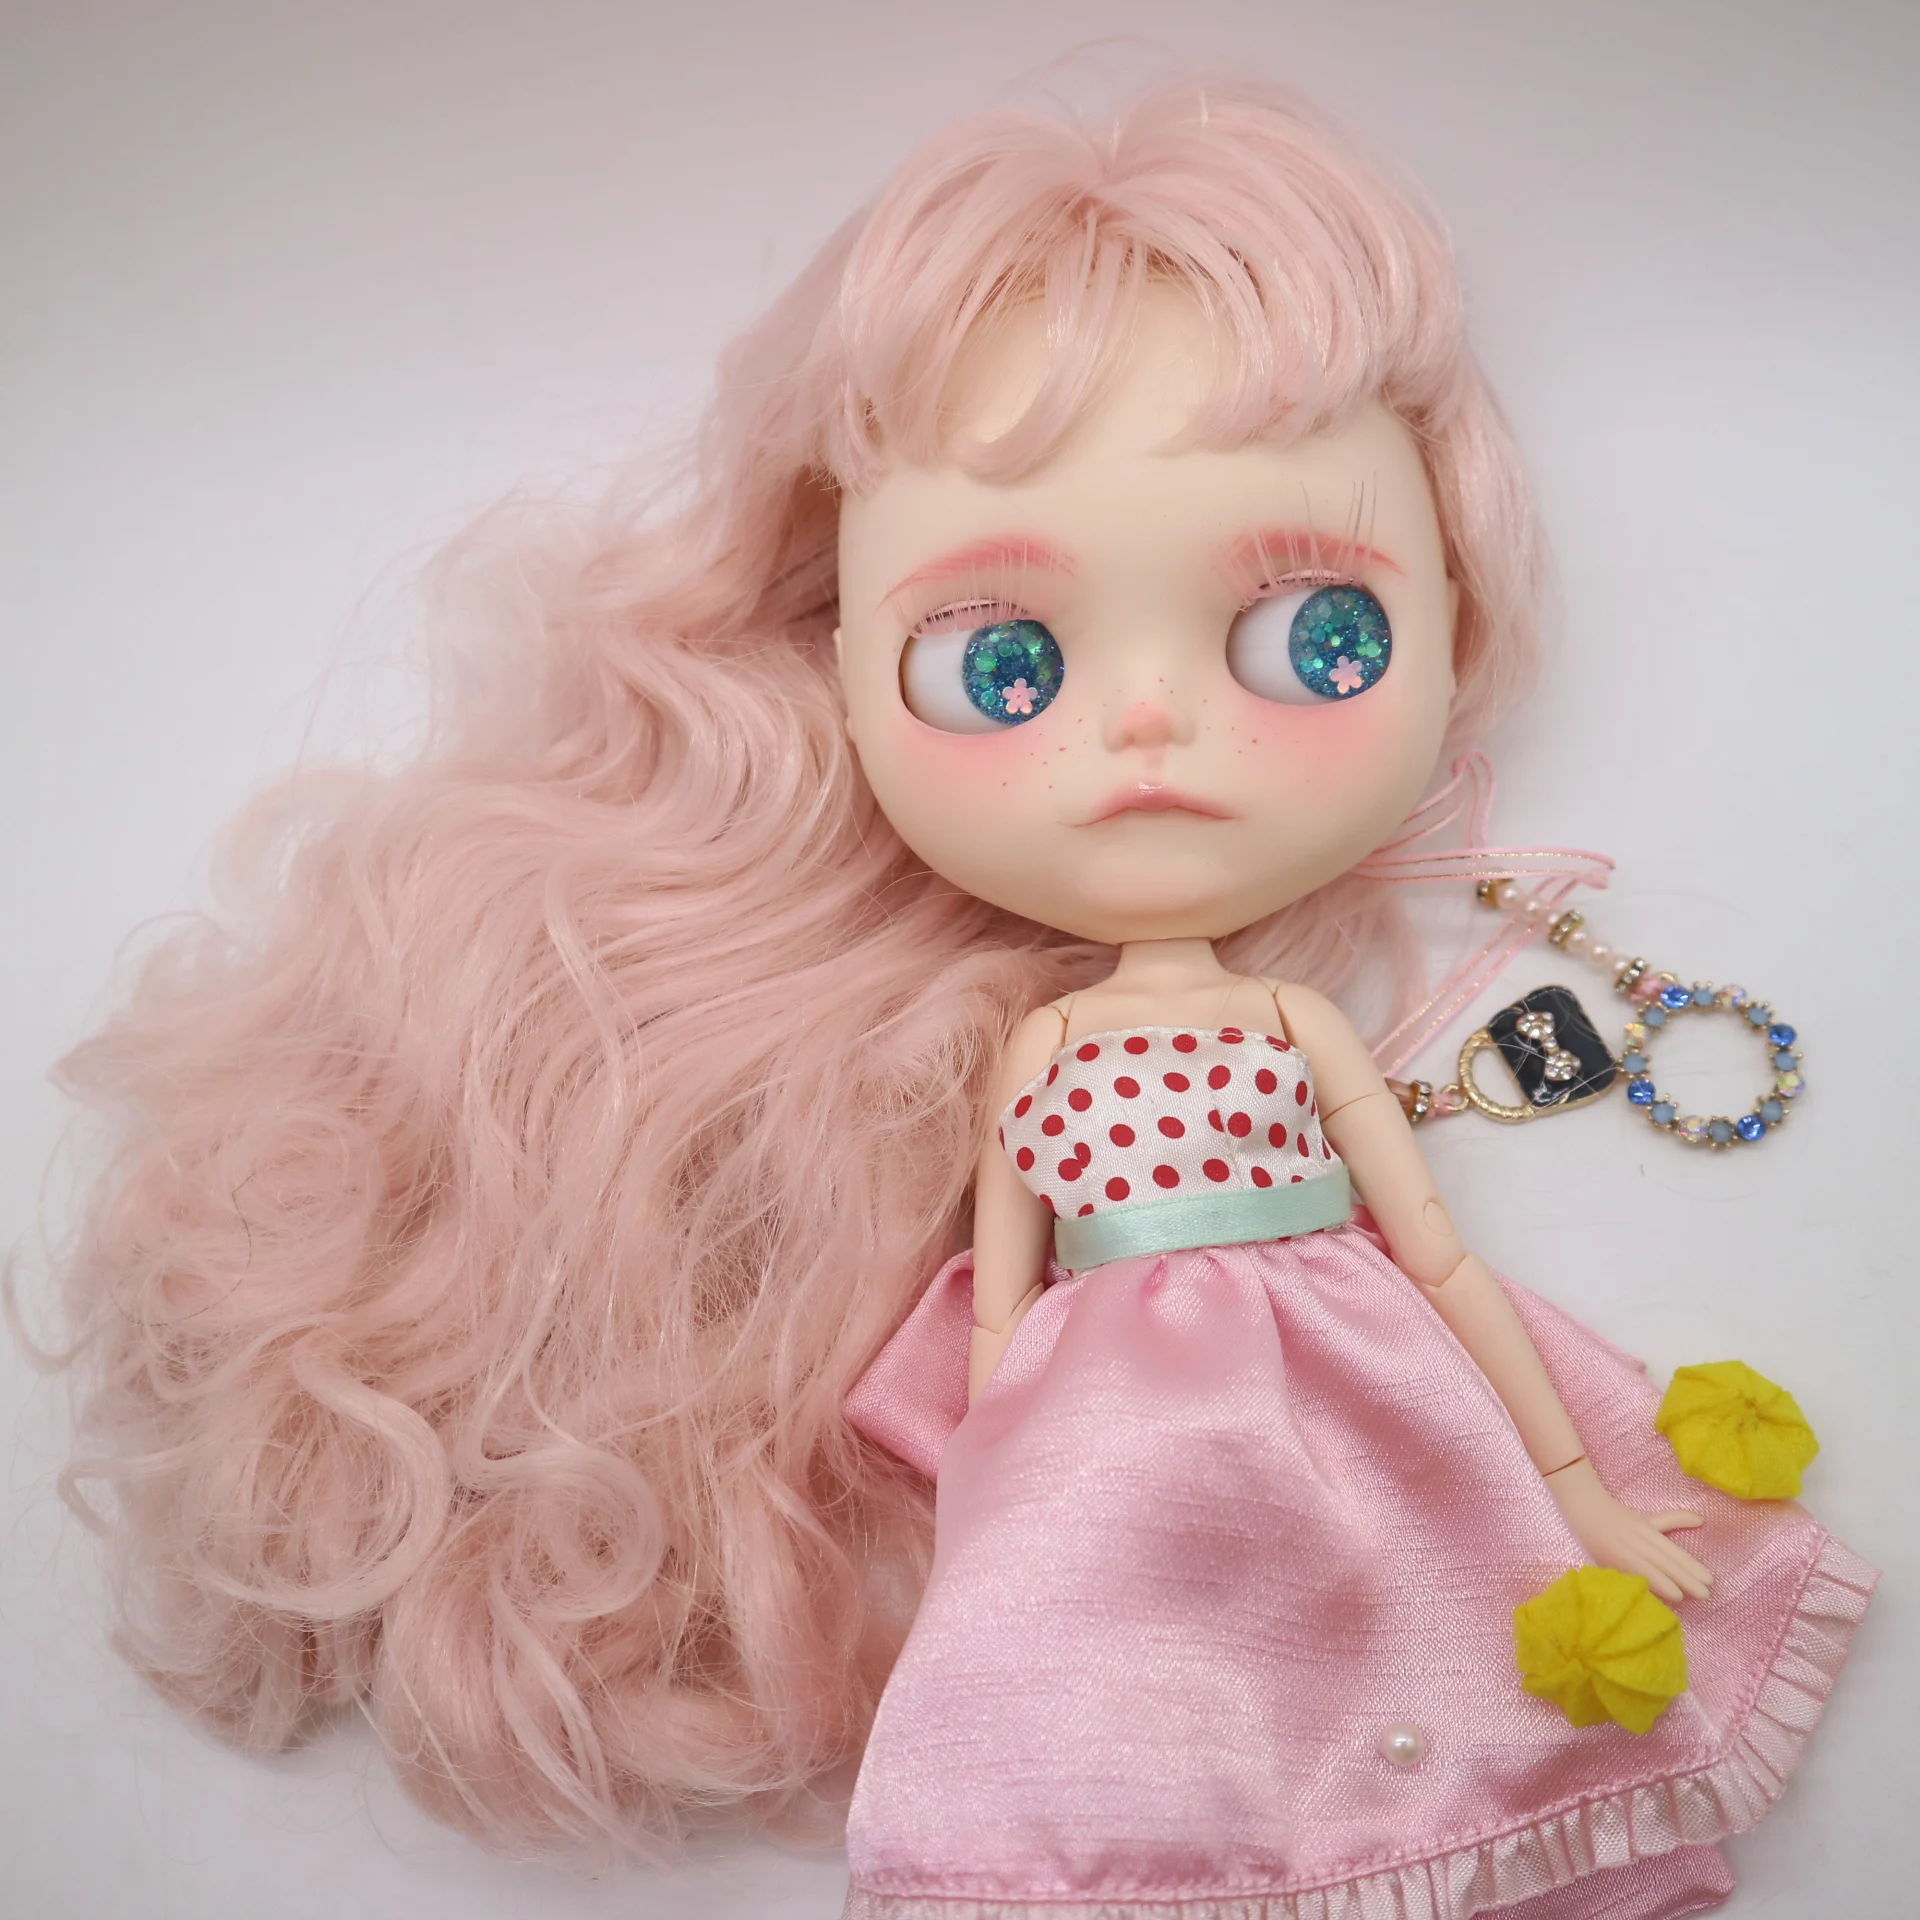 Кастомизация кукла шарнир тело Обнаженная blyth кукла милая кукла девочка игрушка, розовые волосы, 30 см